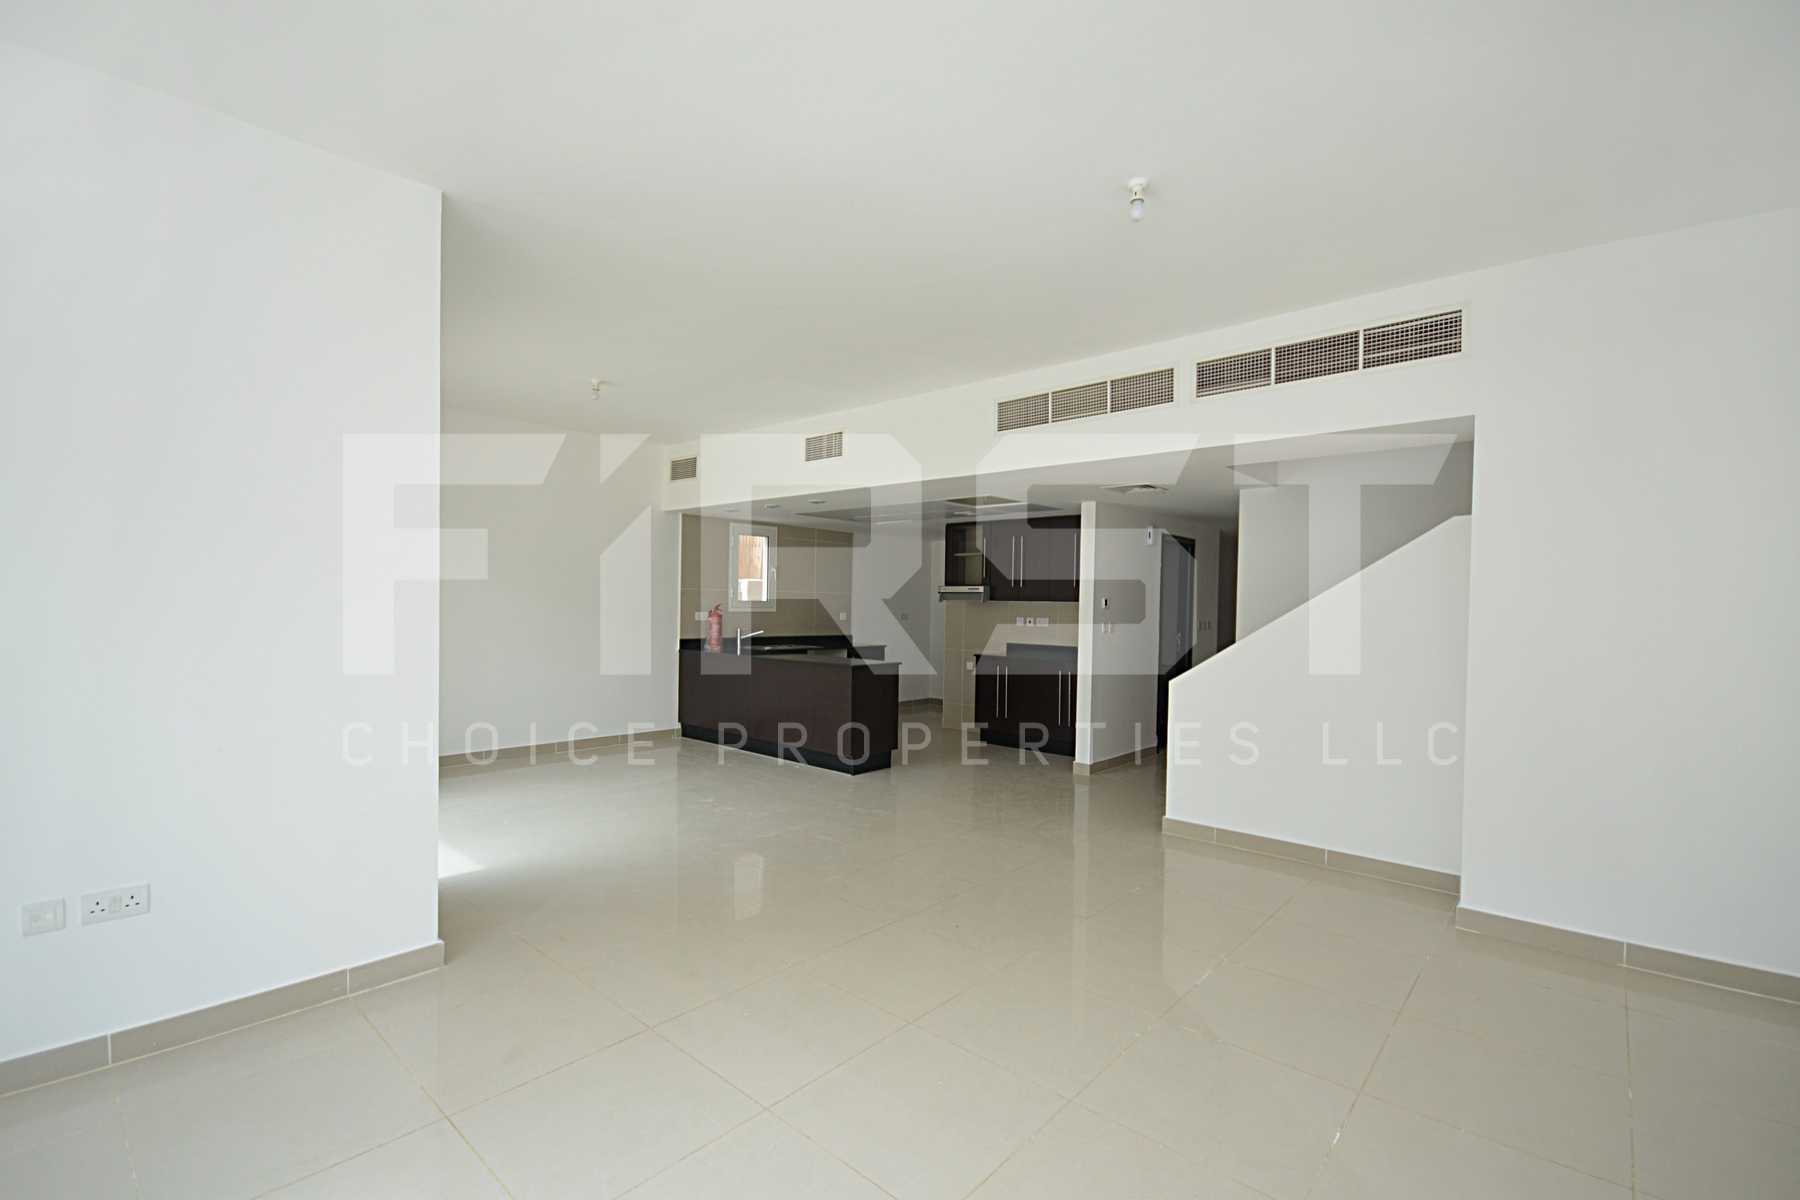 Internal Photo of 4 Bedroom Villa in Al Reef Villas Al Reef Abu Dhabi UAE  2858 sq (4).jpg